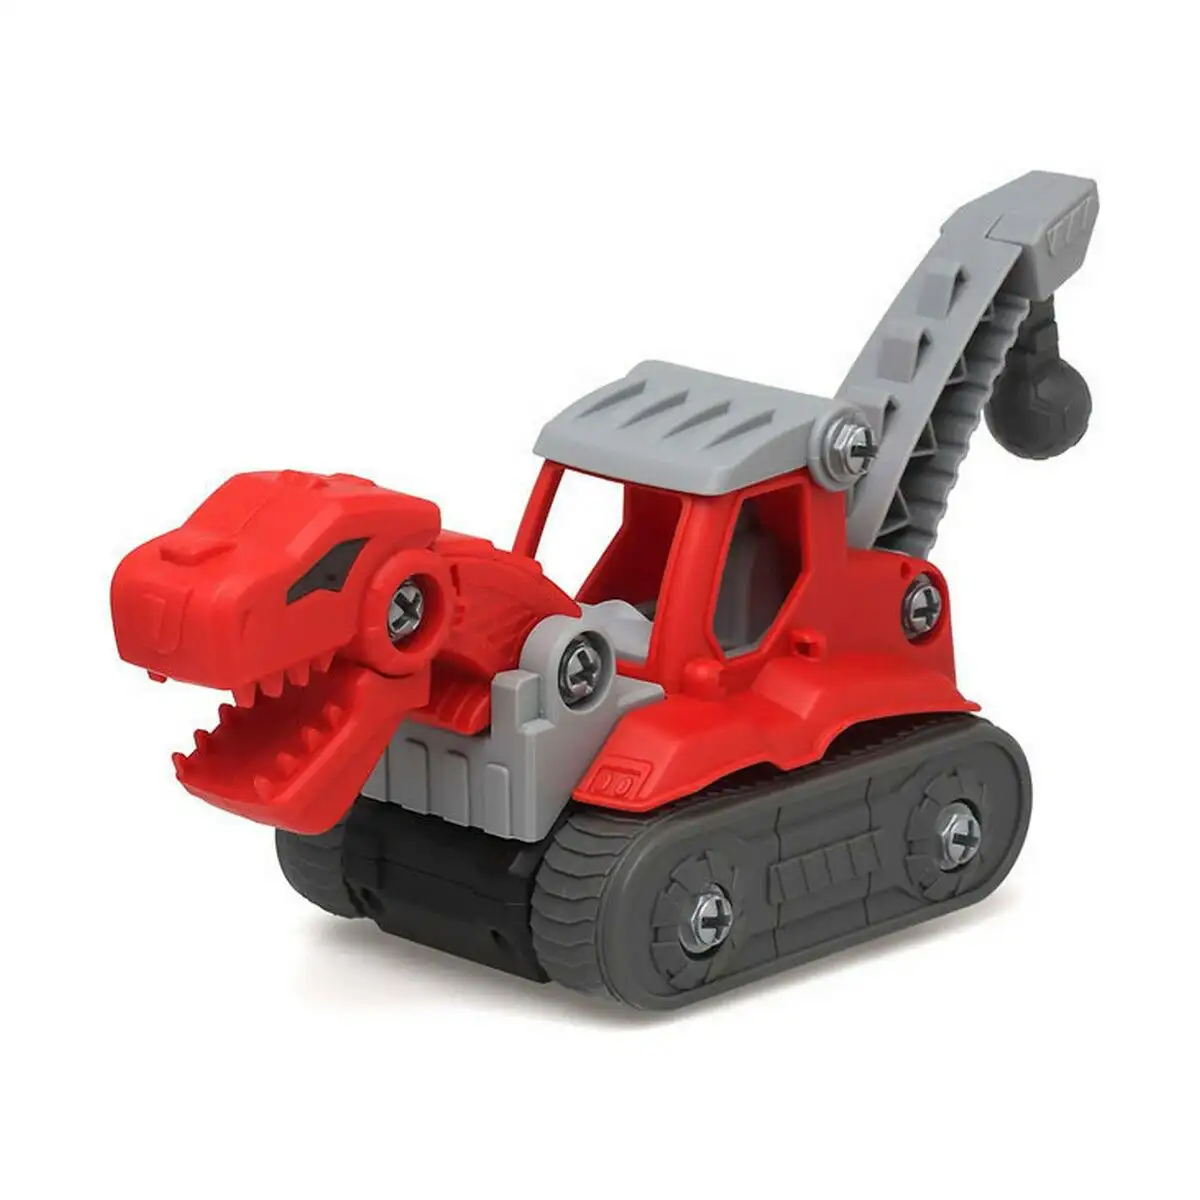 Petite voiture jouet dinosaur rouge_2673. DIAYTAR SENEGAL - Votre Portail Vers l'Exclusivité. Explorez notre boutique en ligne pour découvrir des produits uniques et raffinés, conçus pour ceux qui recherchent l'excellence.